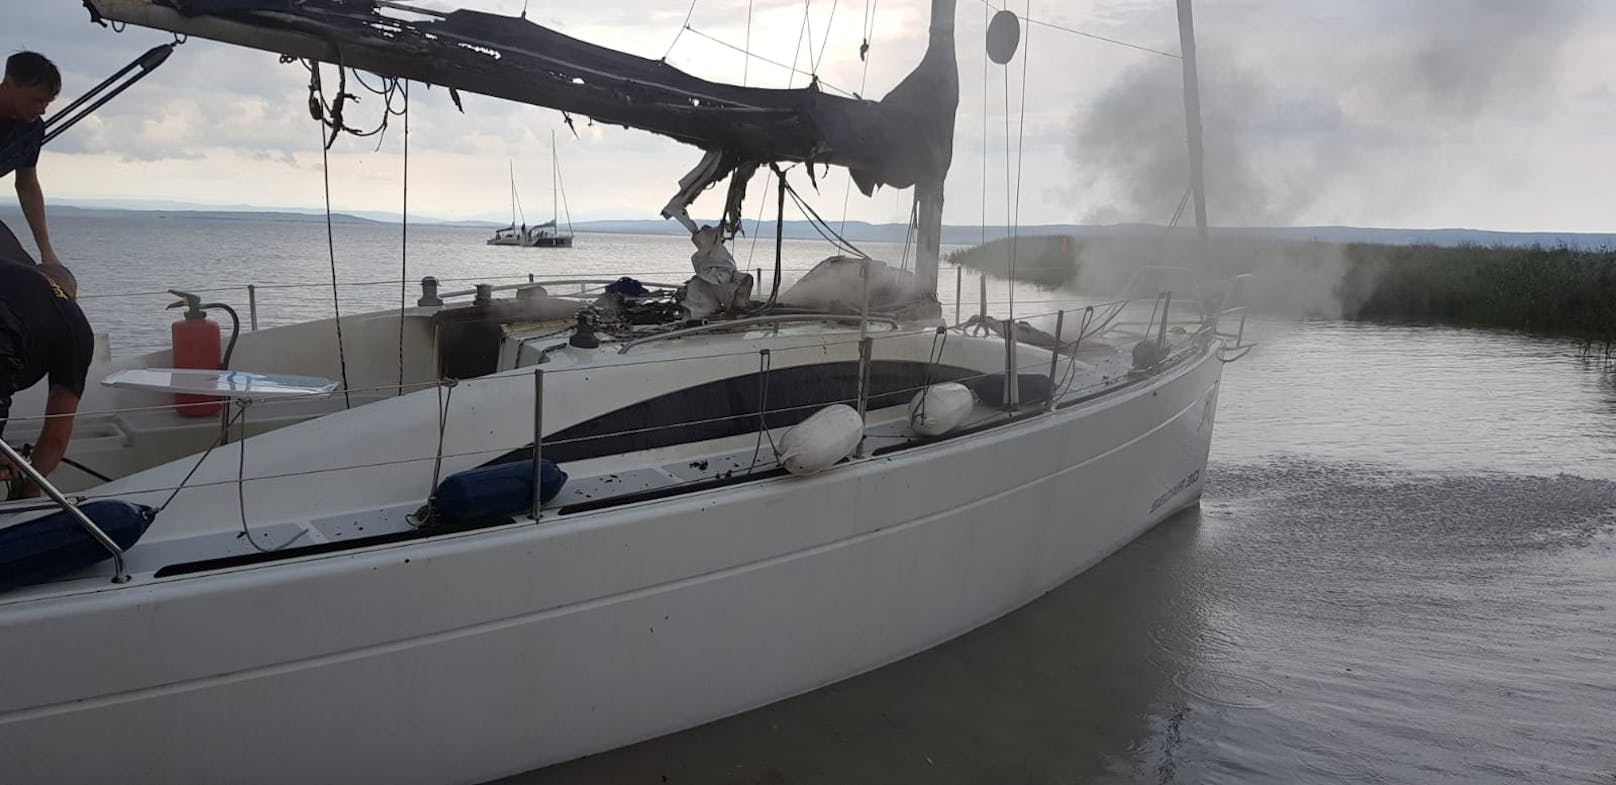 Brand auf Segelboot nach Blitzschlag am Neusiedler See (25. Juli 2020)